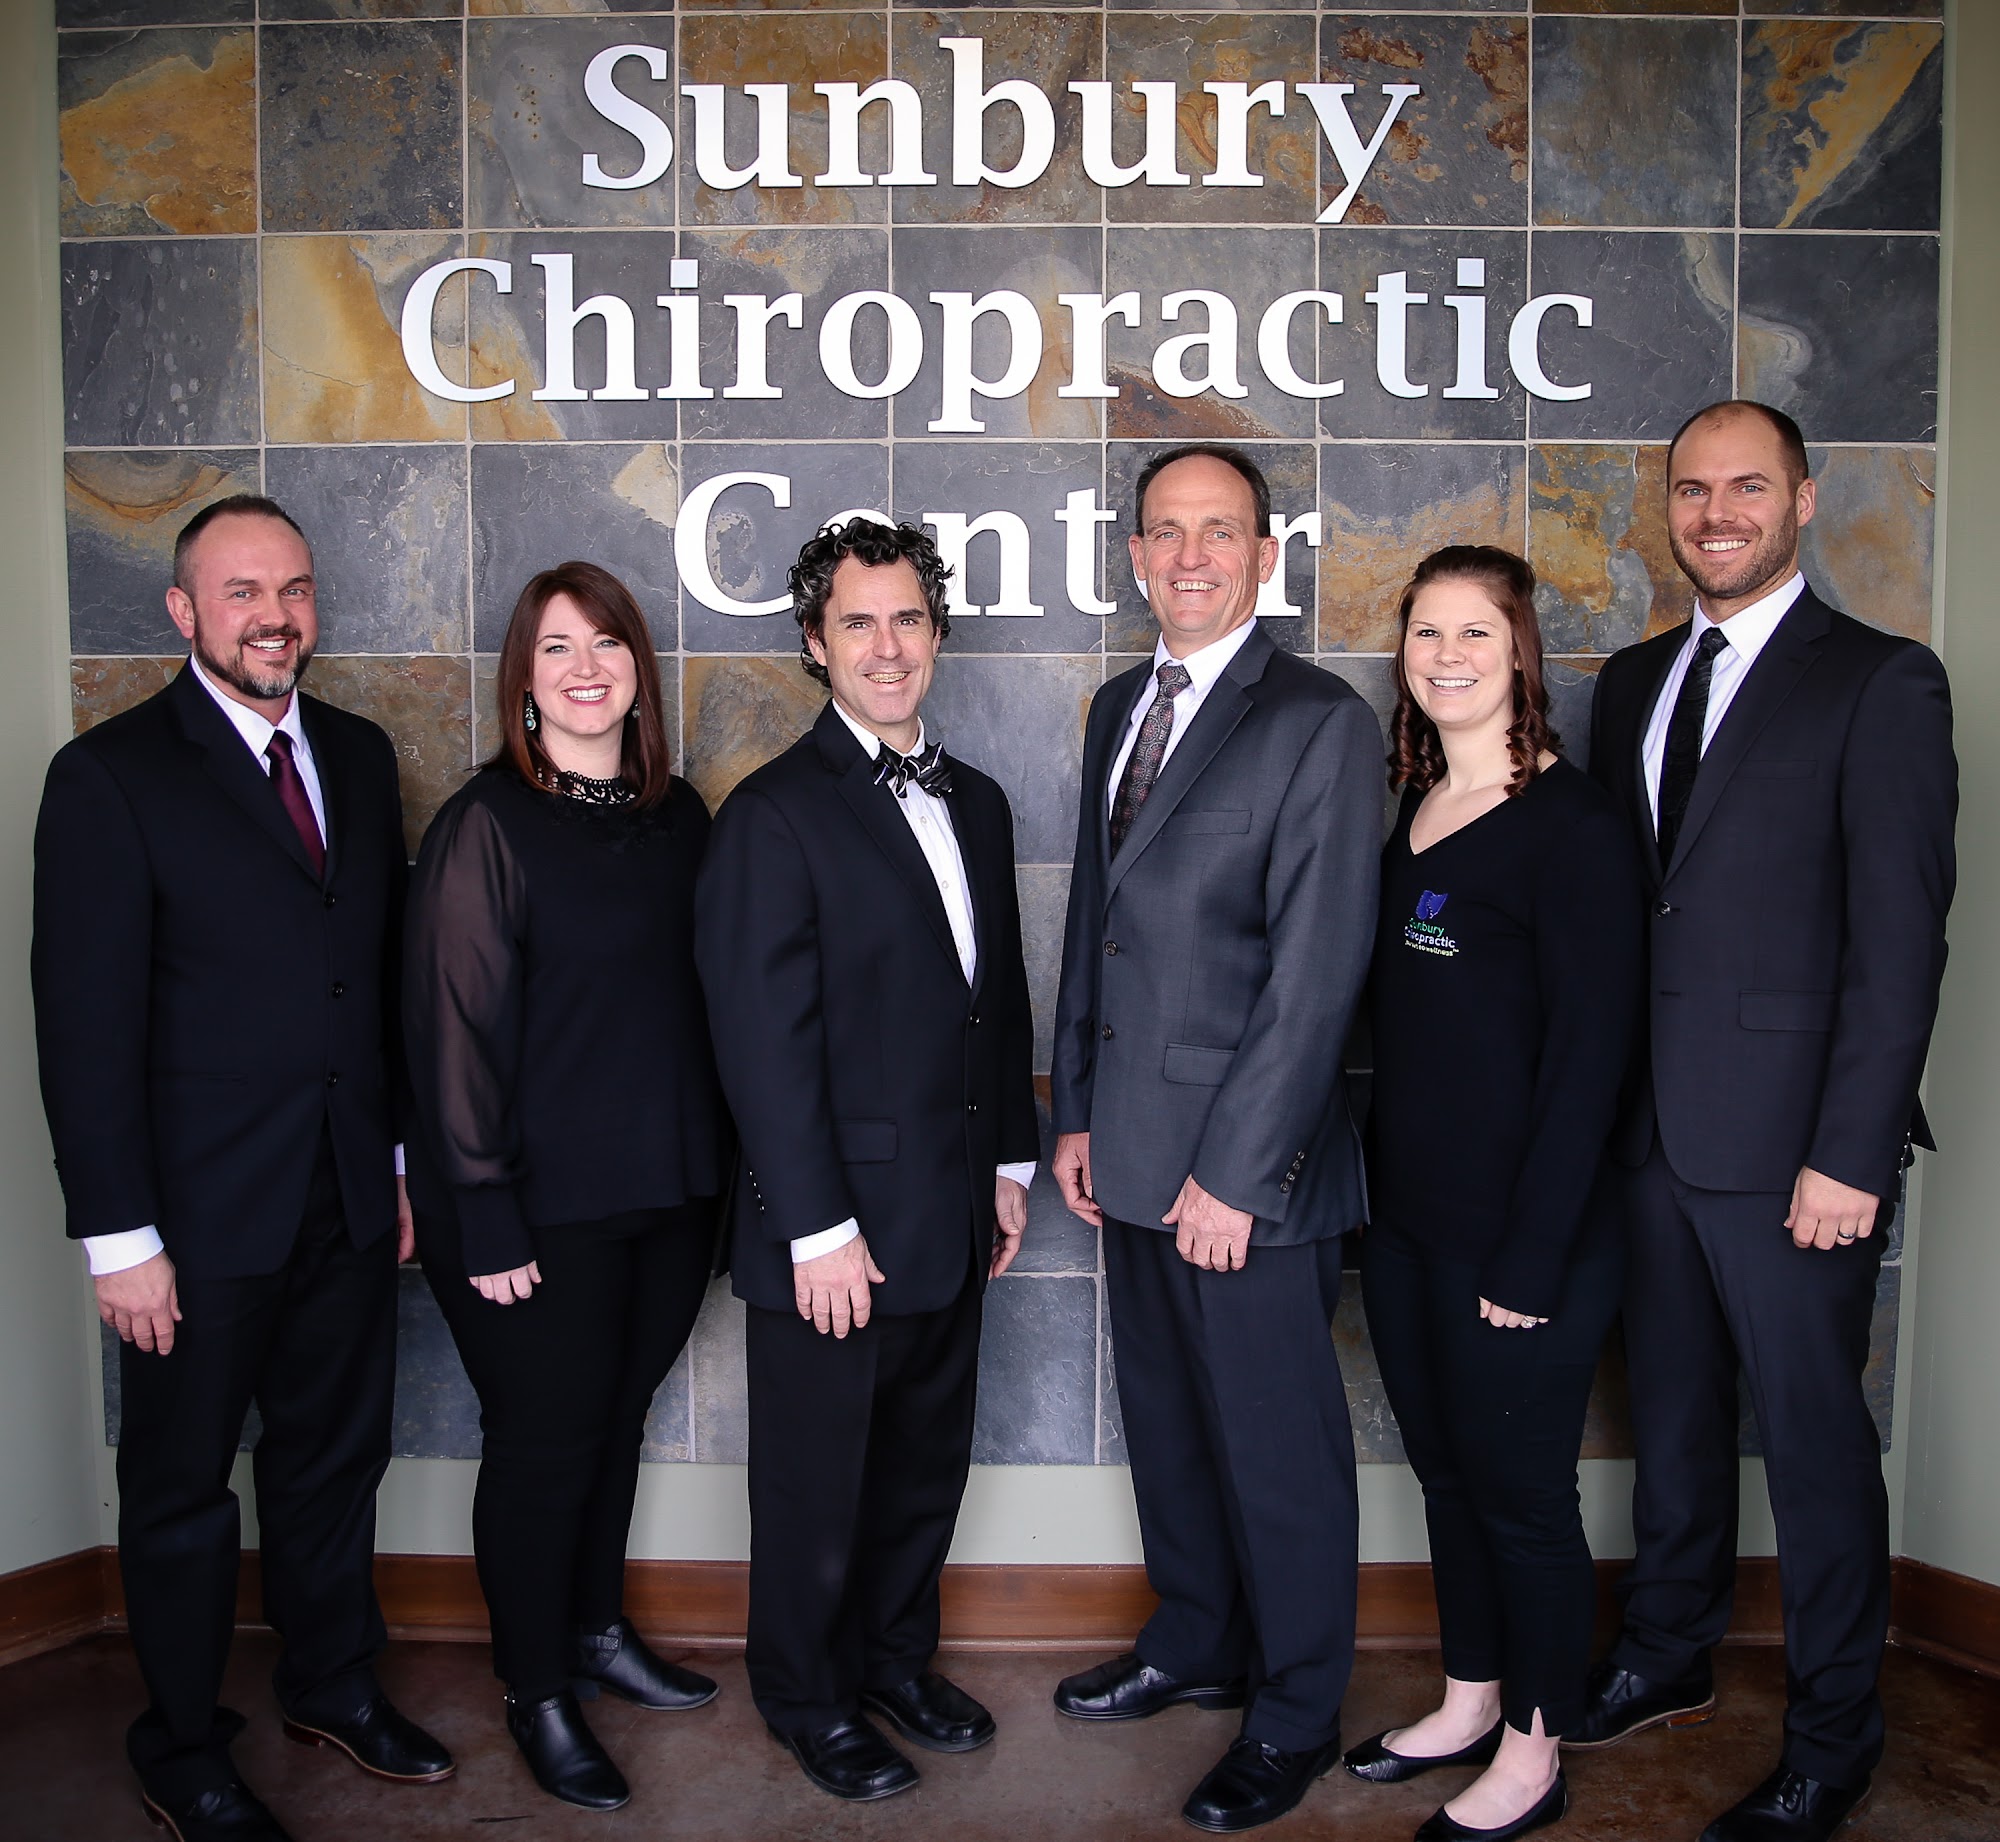 Sunbury Chiropractic Center